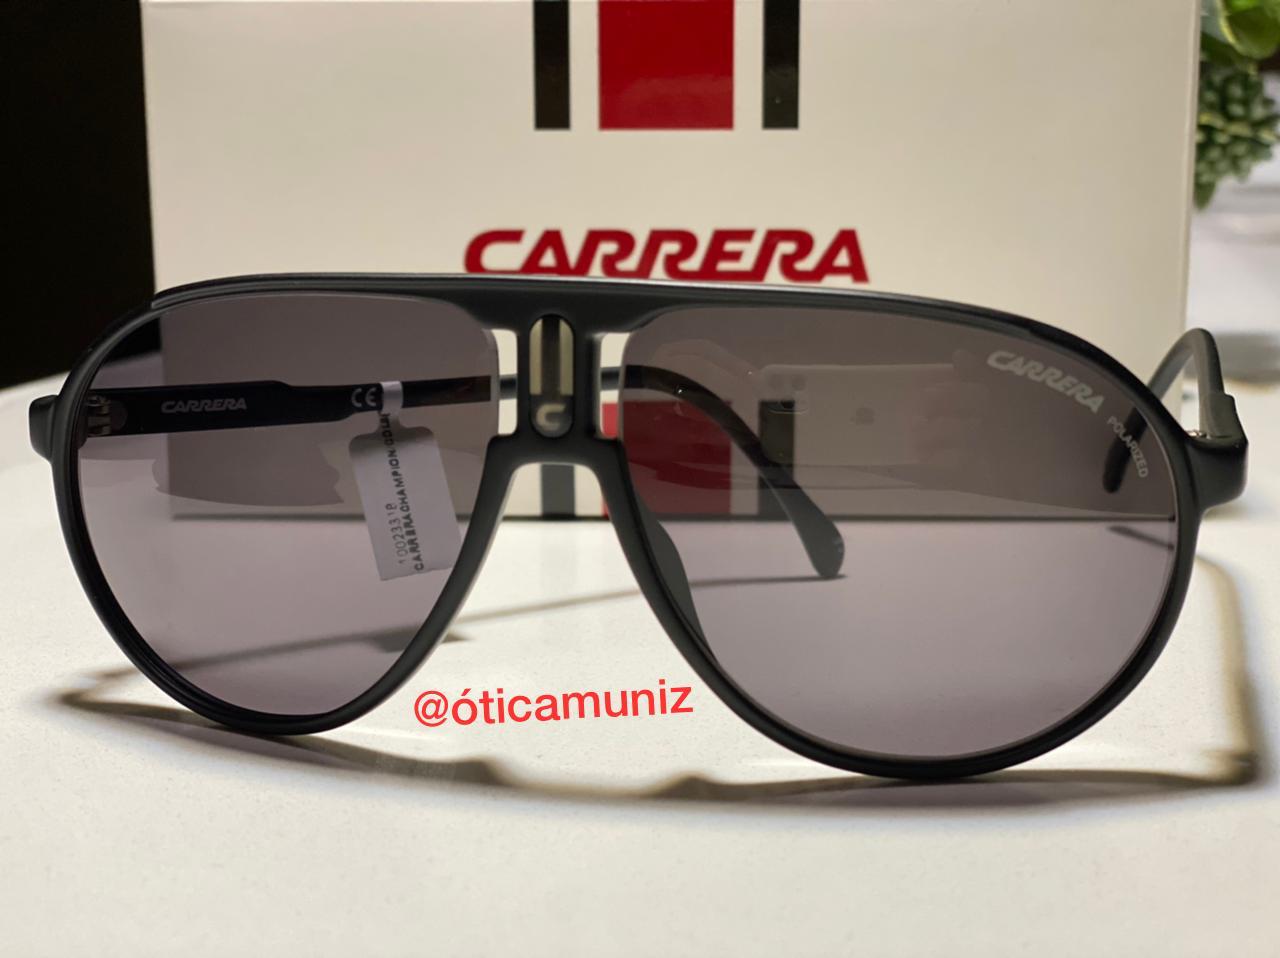 foto de Óculos com a qualidade da marca Carrera